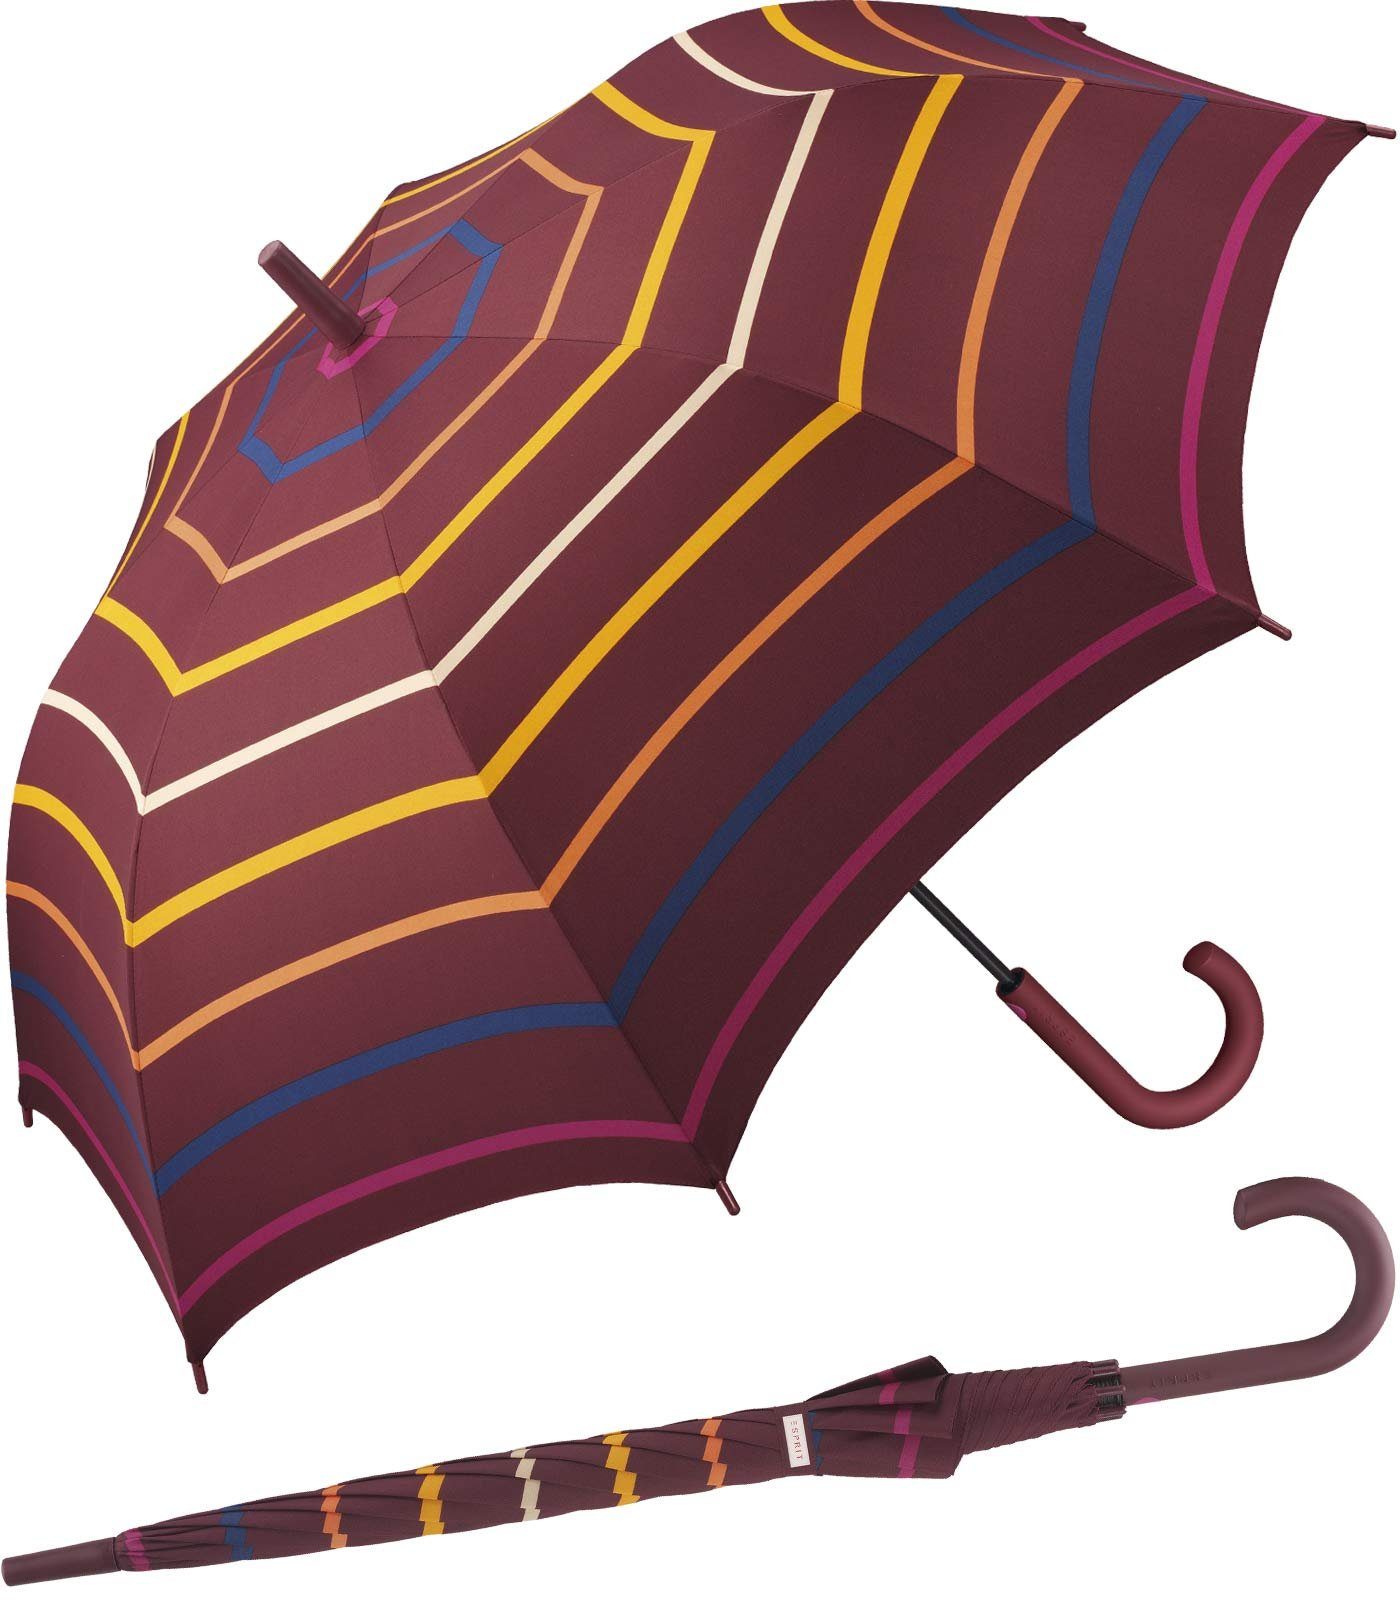 Esprit Langregenschirm großer Regenschirm für Damen mit Auf-Automatik, stabil, leicht, mit Streifen in warmen Farbtönen